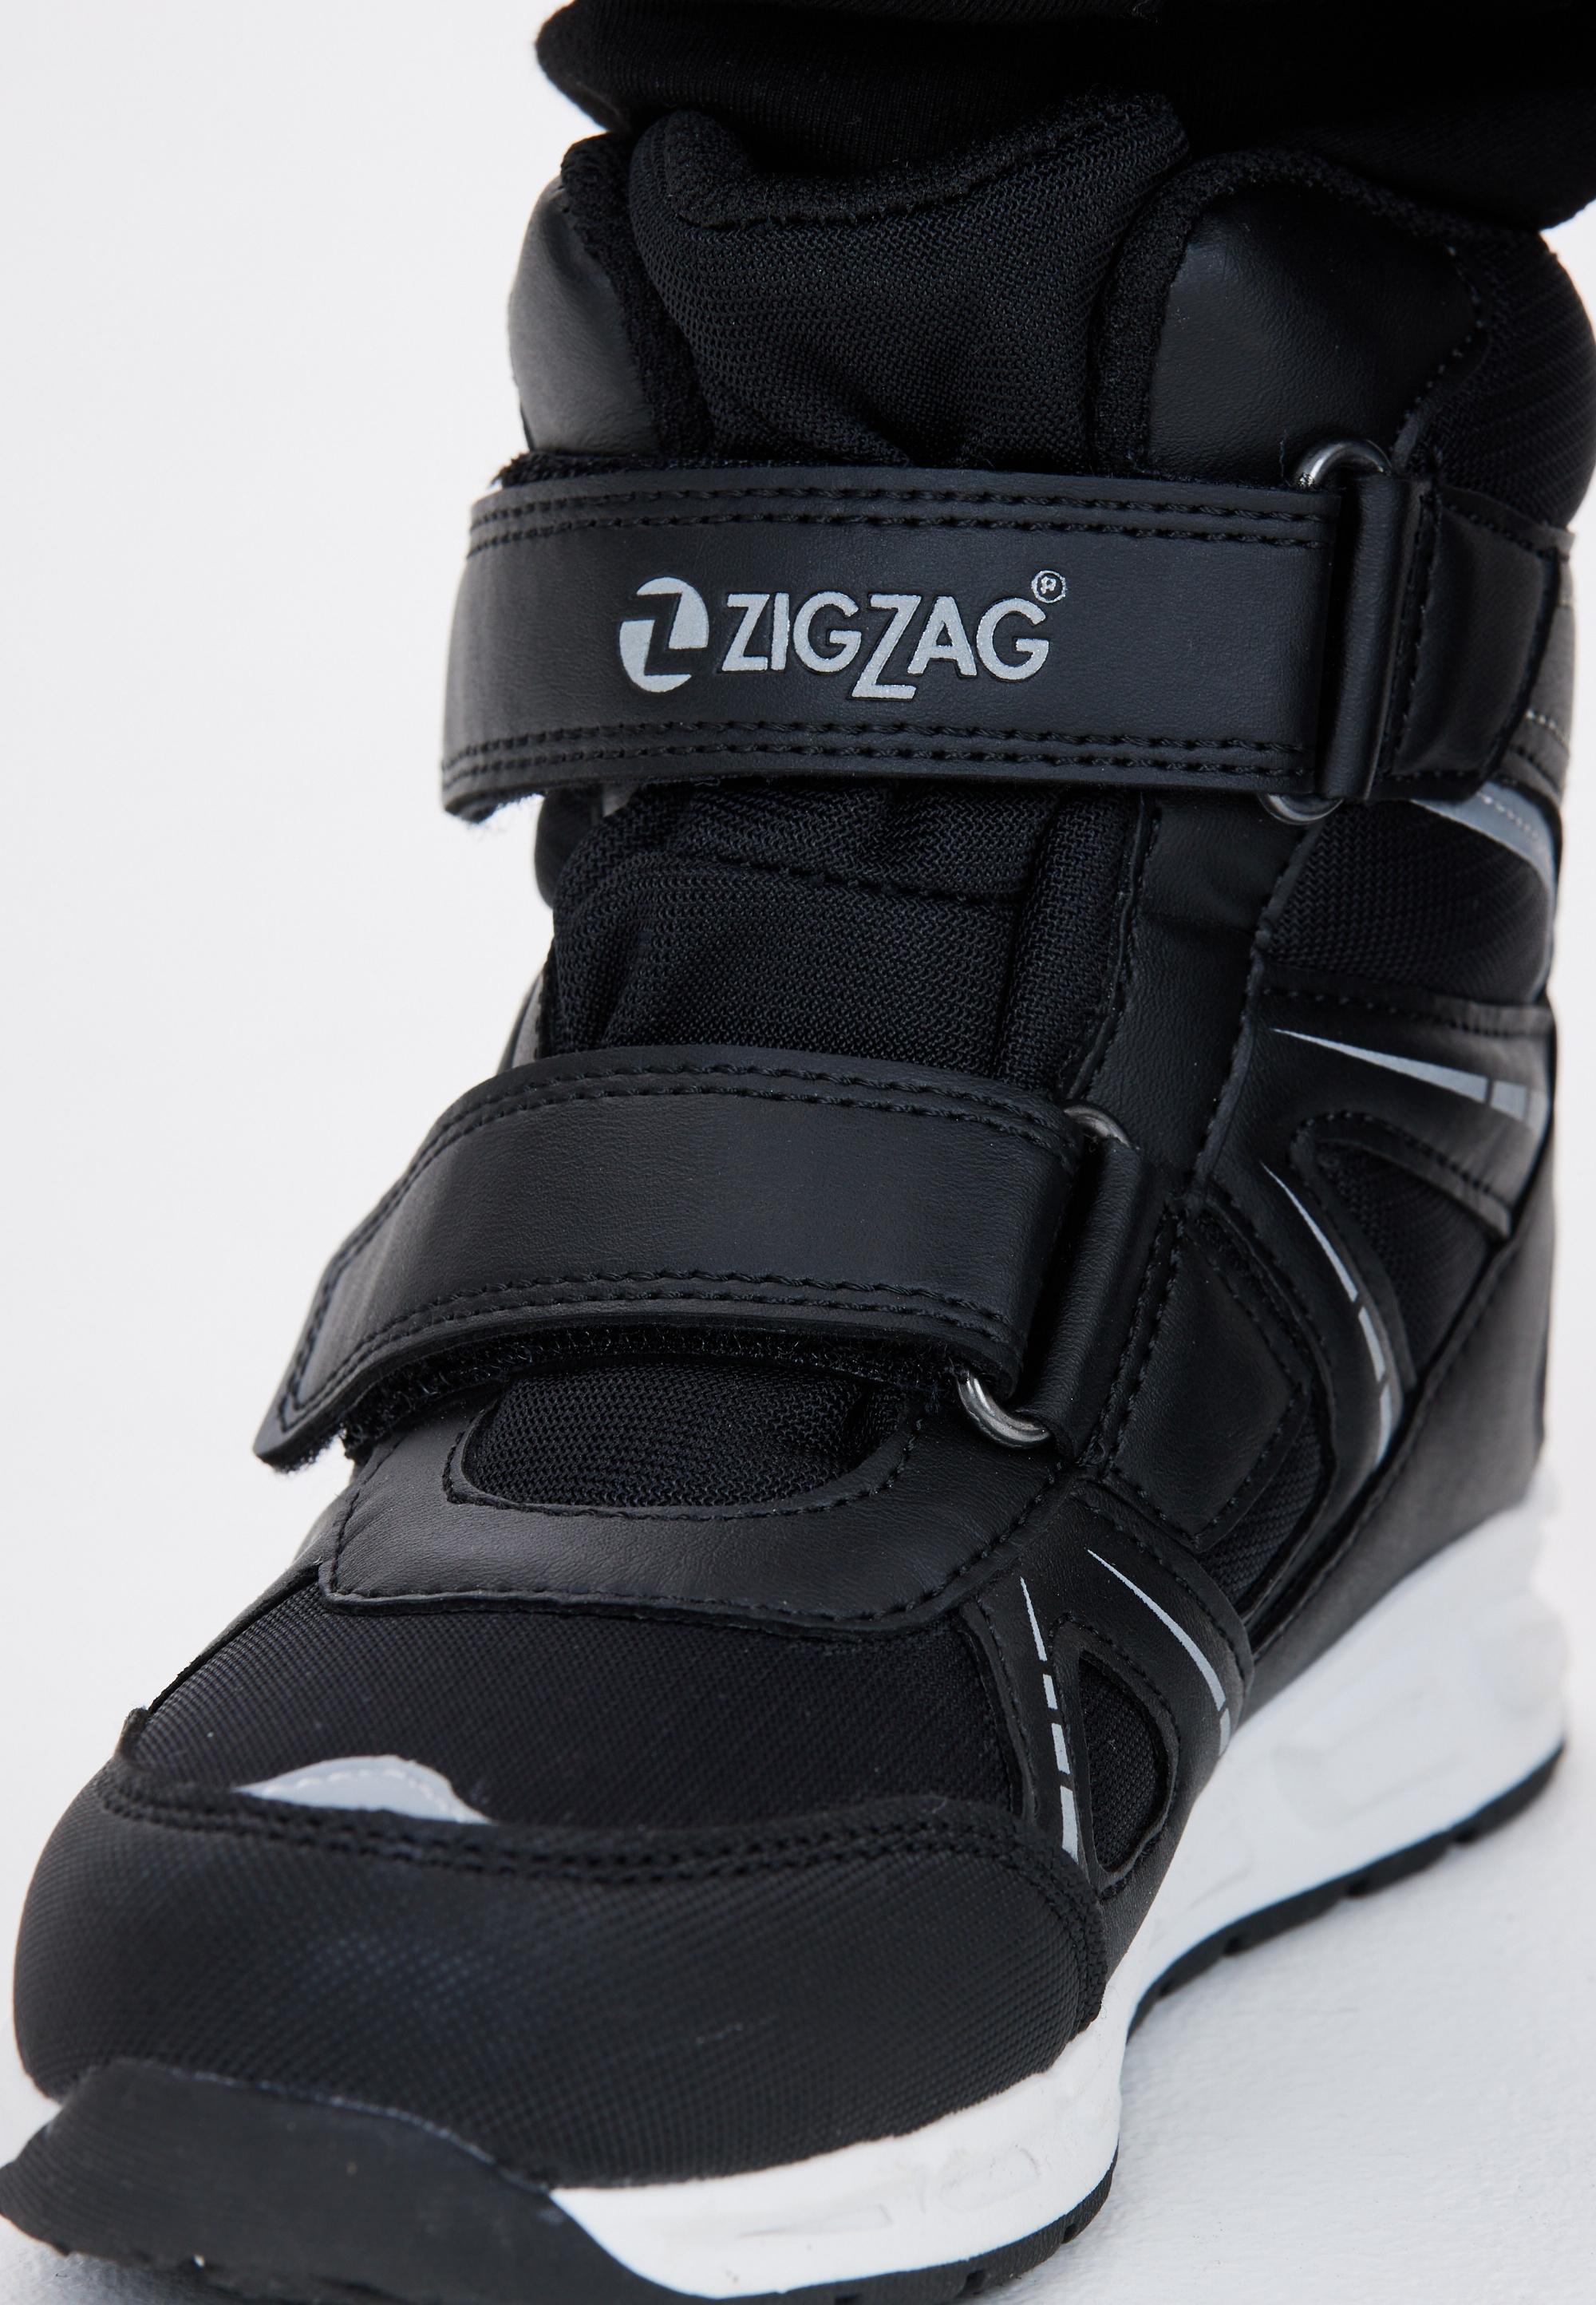 ZigZag Taier Stiefel Kinder 1001 Black im Online Shop von SportScheck kaufen